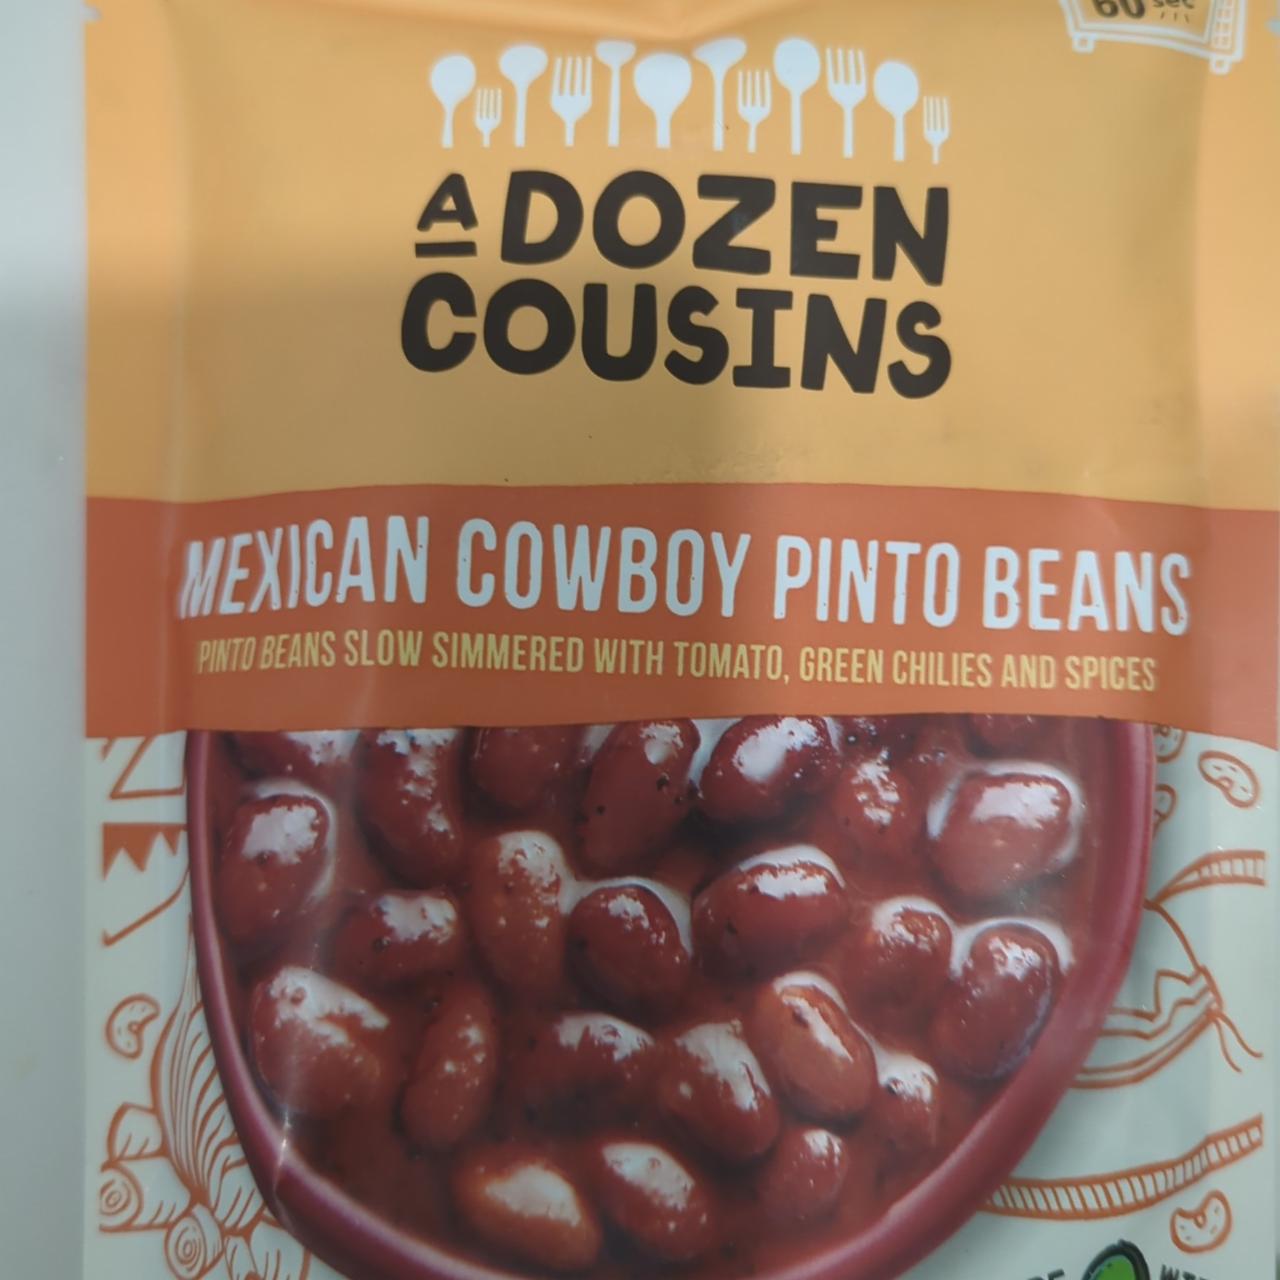 Fotografie - Mexican cowboy pinto beans A Dozen Cousins